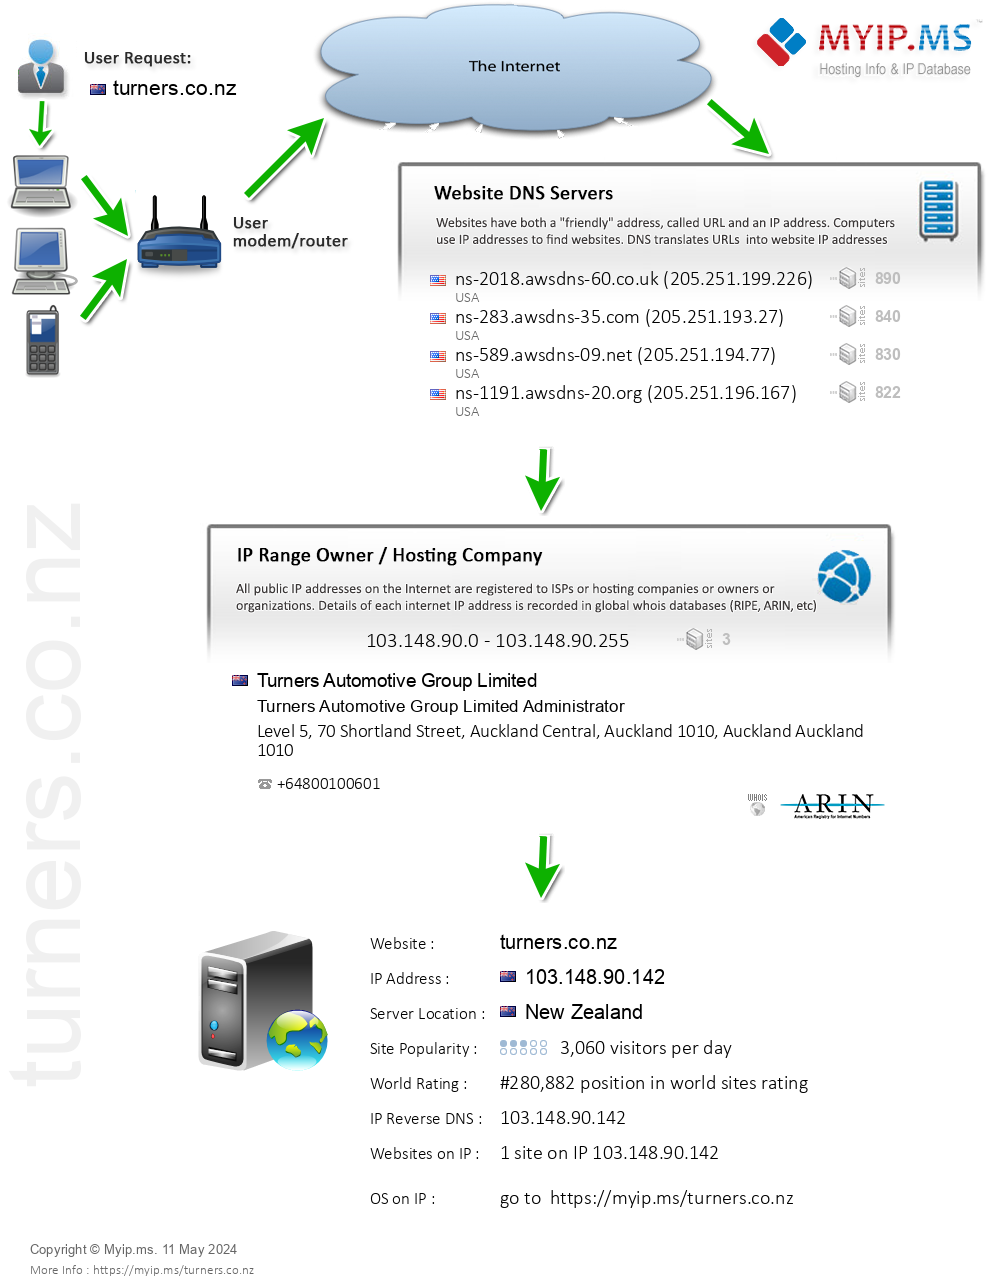 Turners.co.nz - Website Hosting Visual IP Diagram